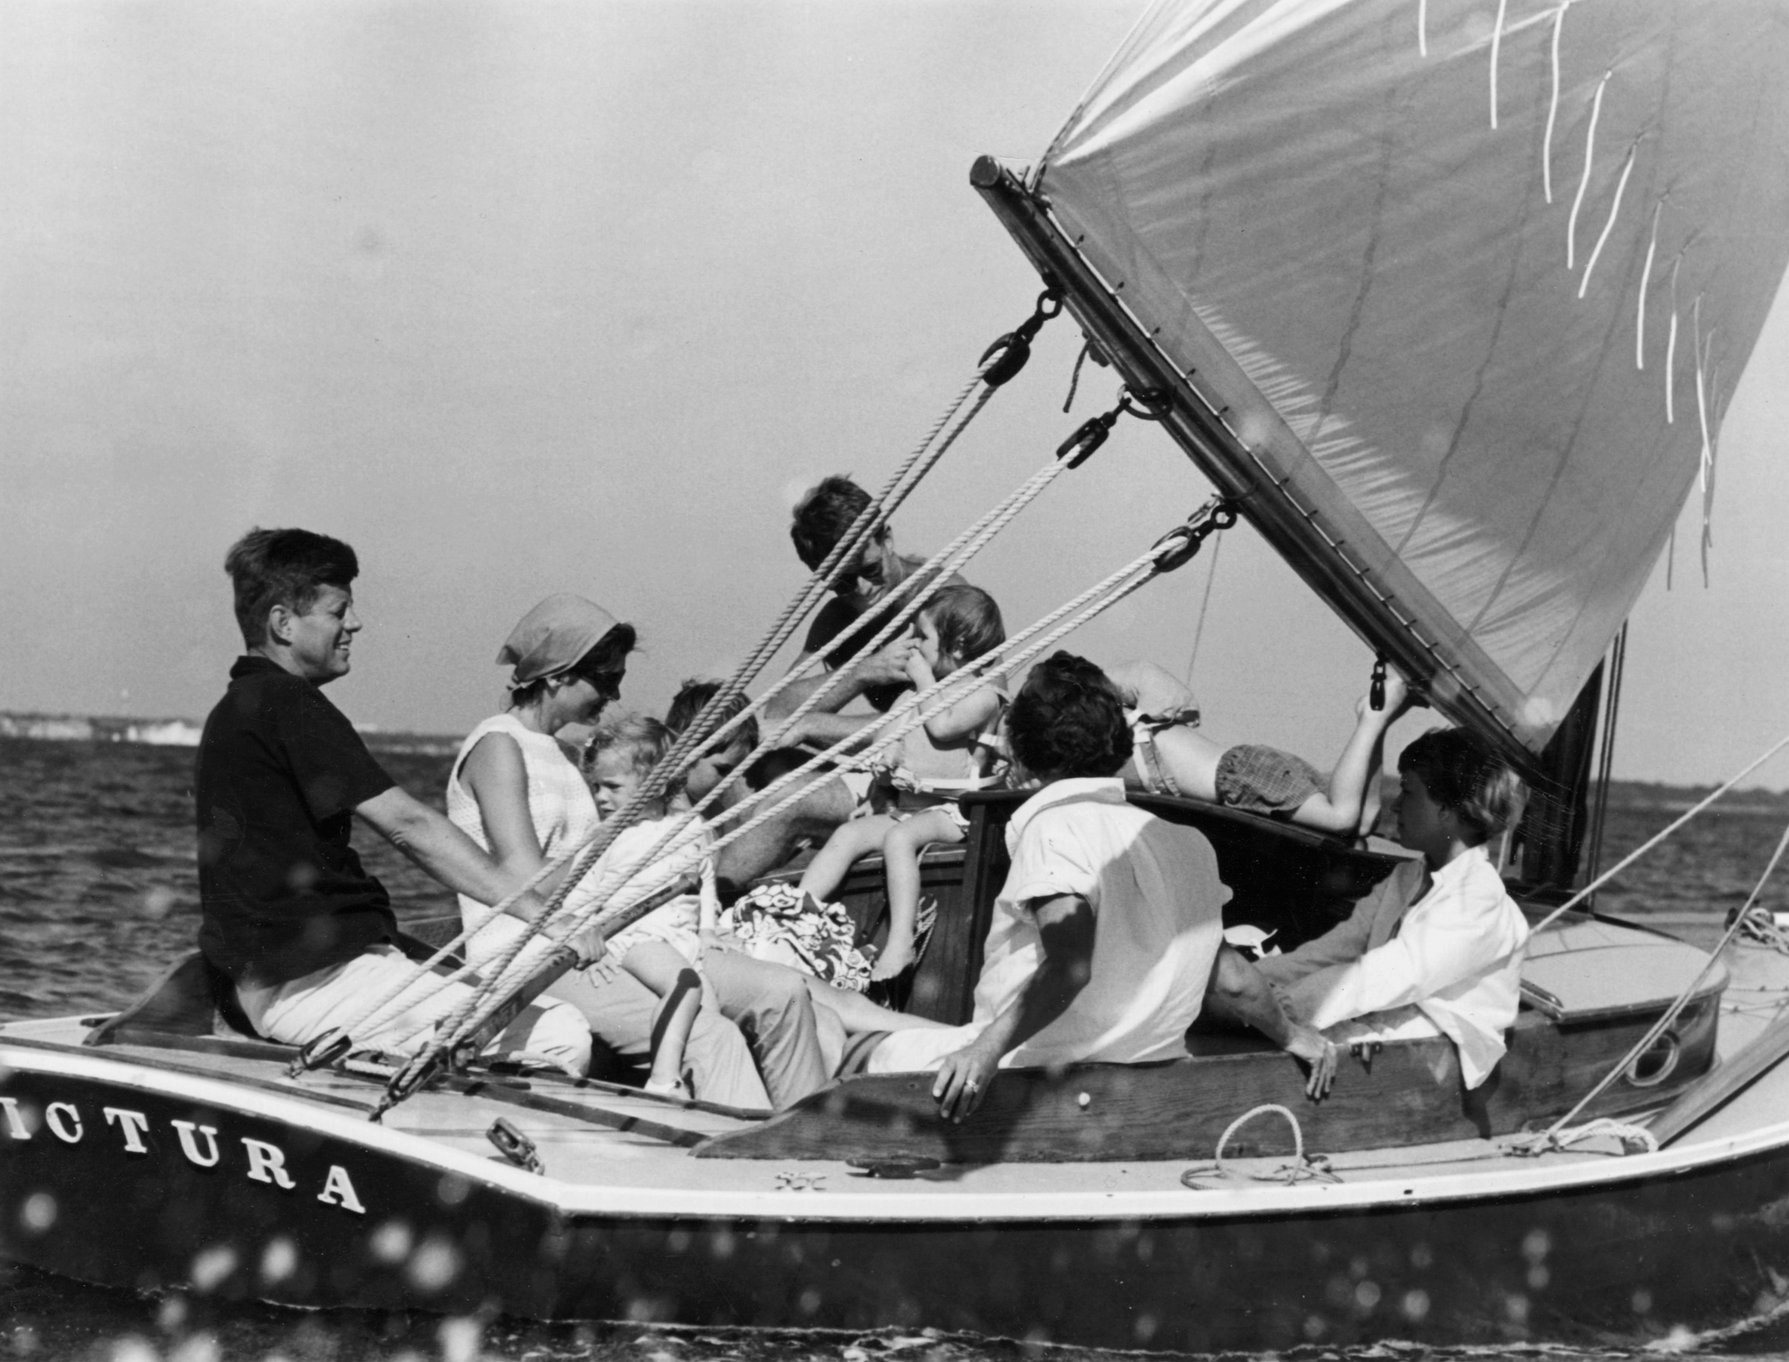 President JFK på seilbåten hans Victura.